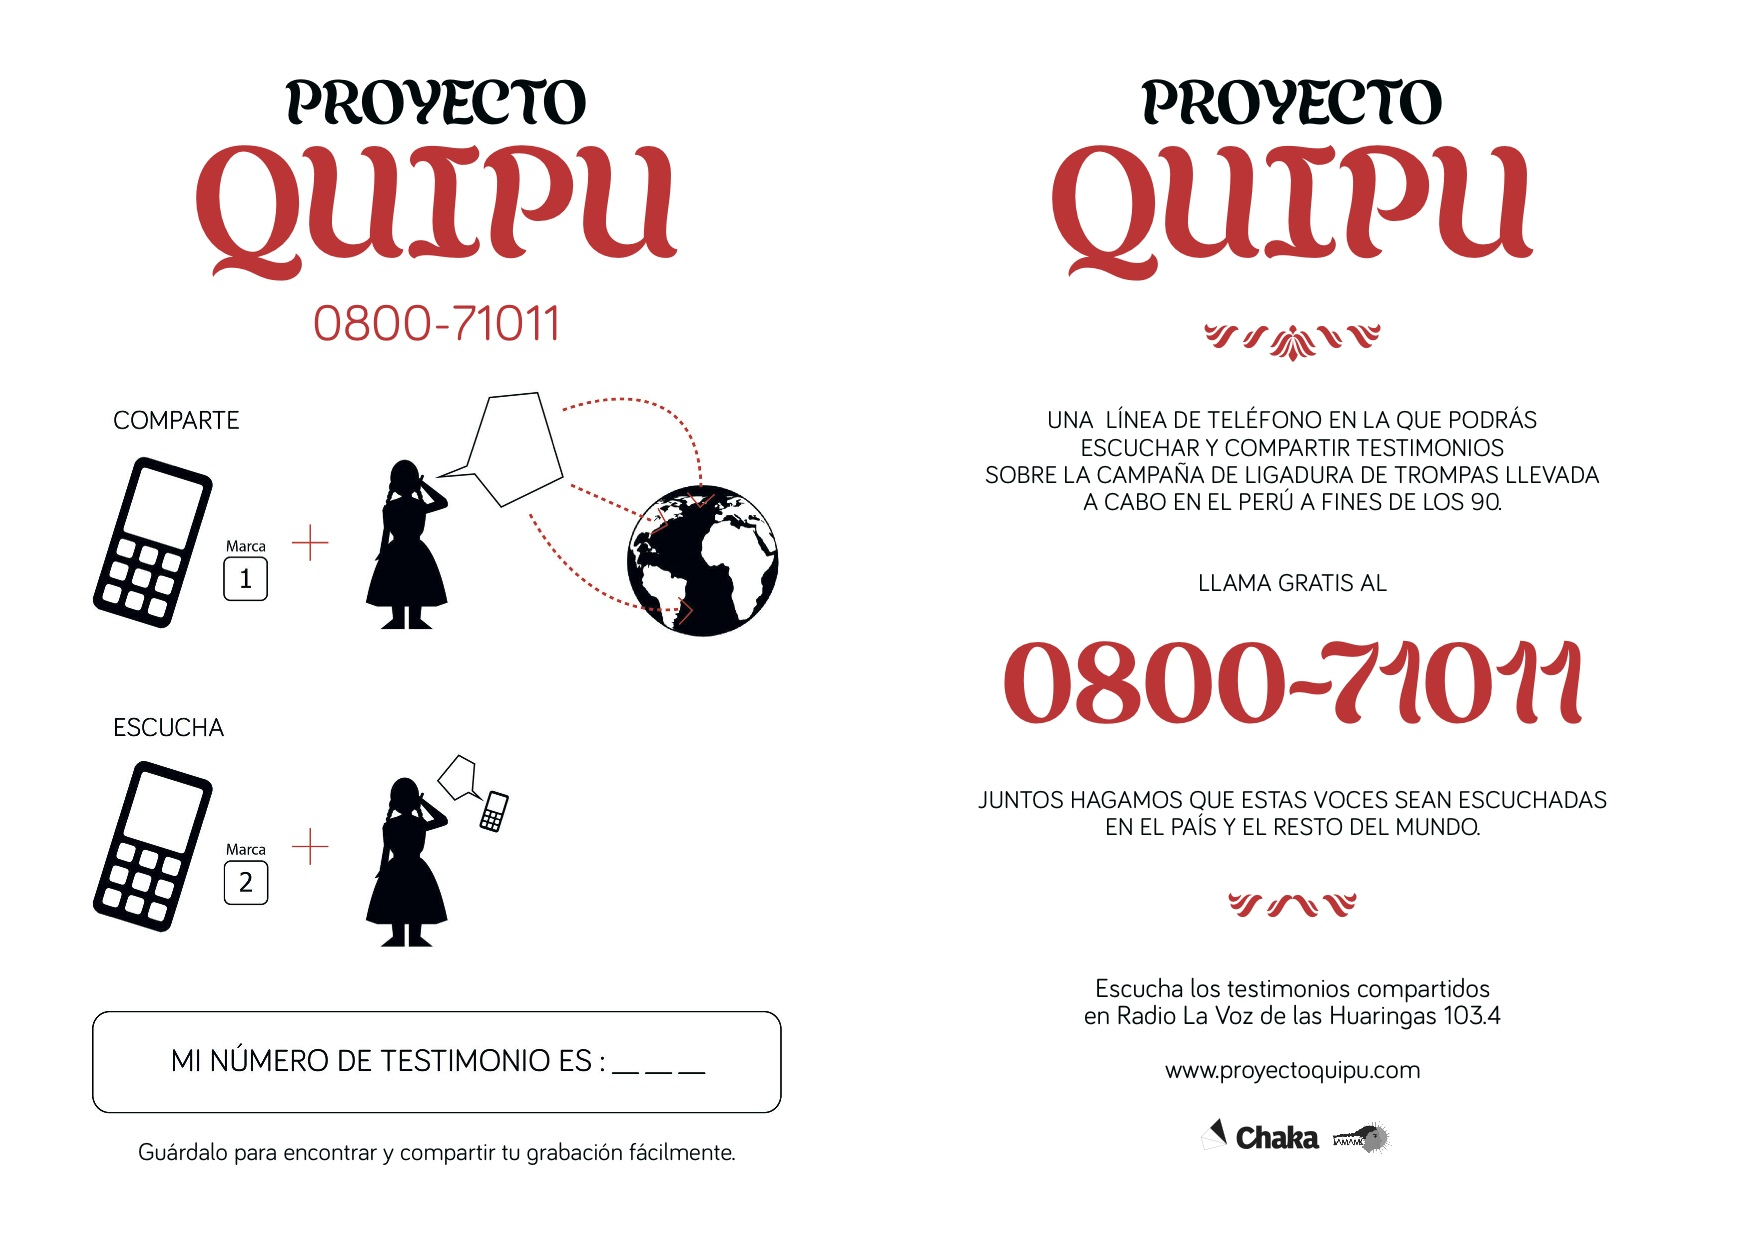 Un folleto del proyecto Quipu que anuncia el programa. Publicado con autorización.